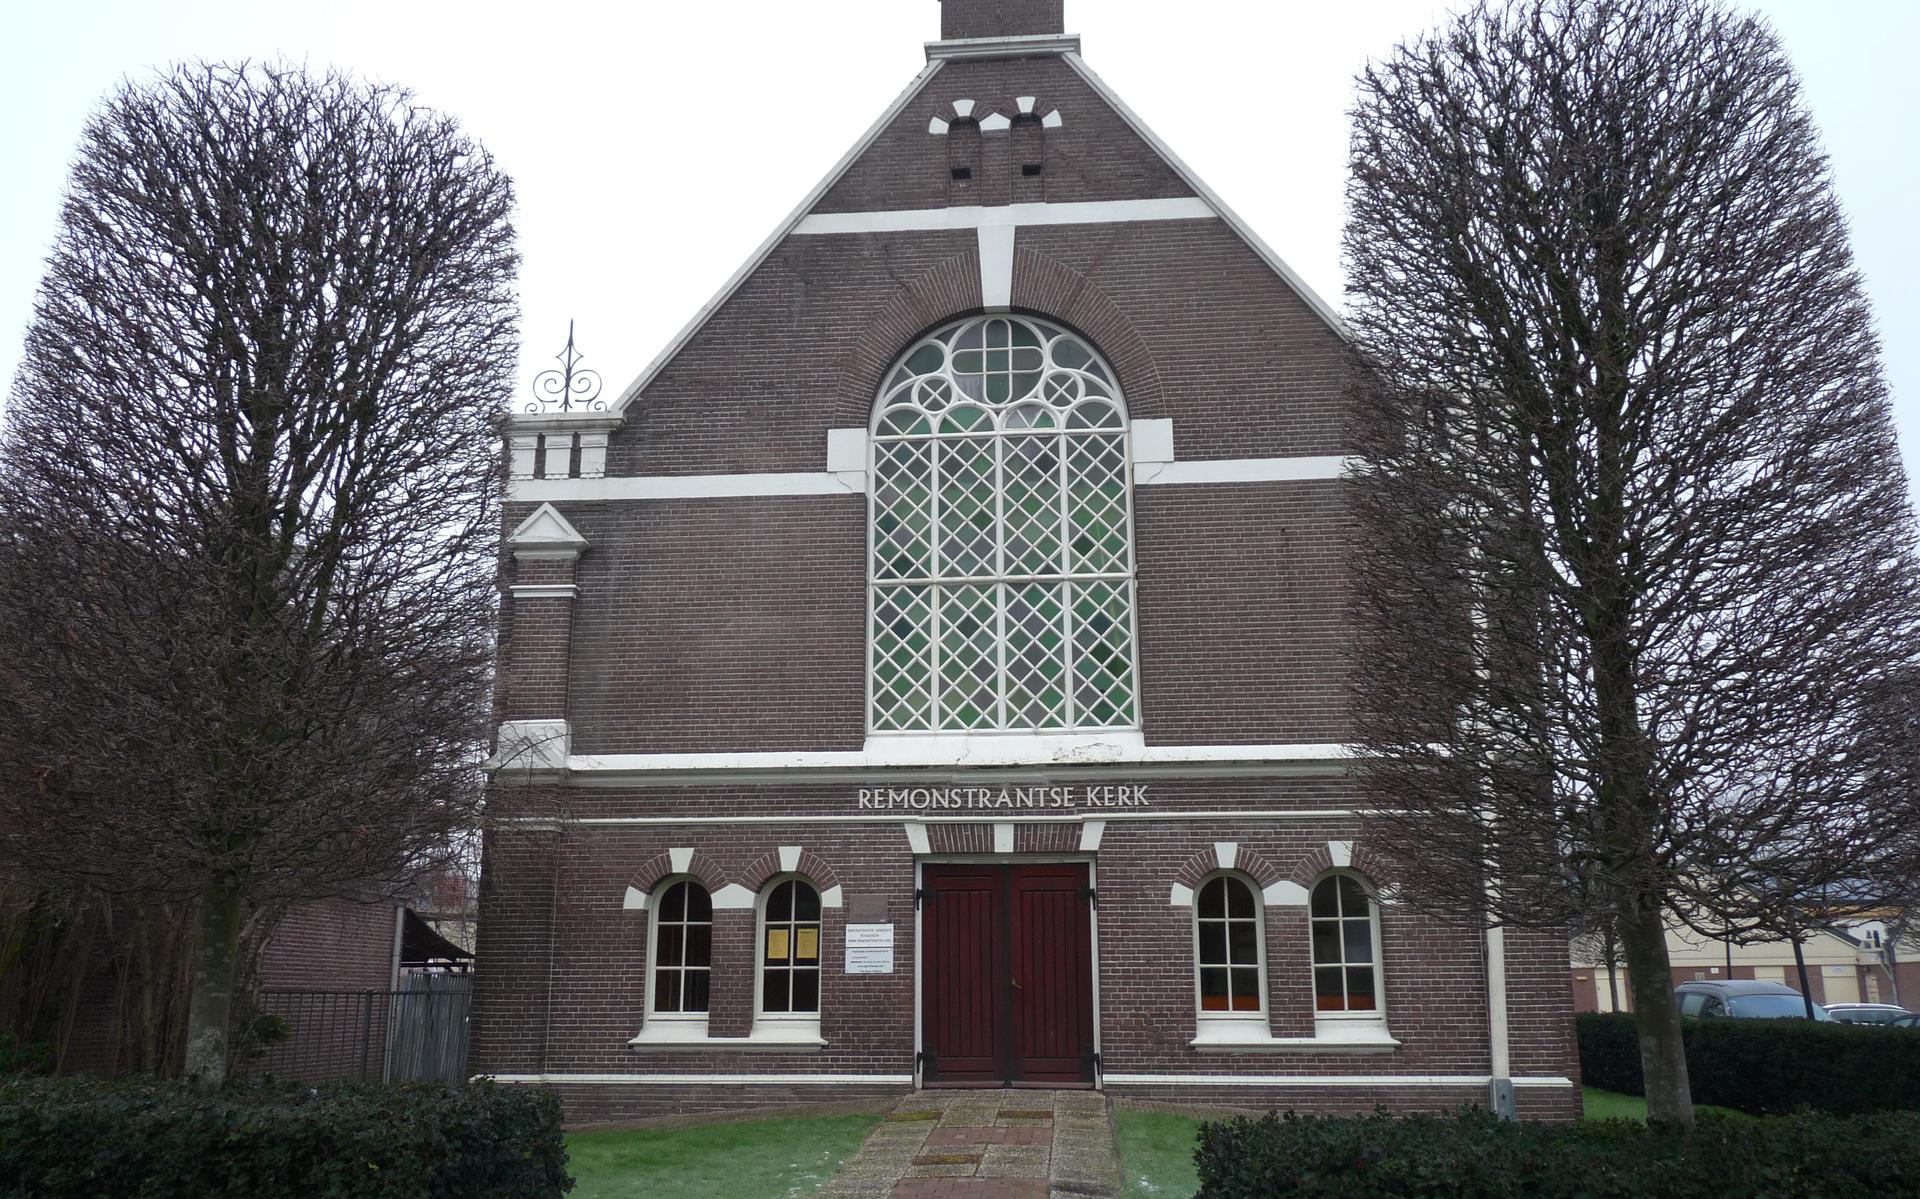 Remonstrantse kerk in Hoogeveen.